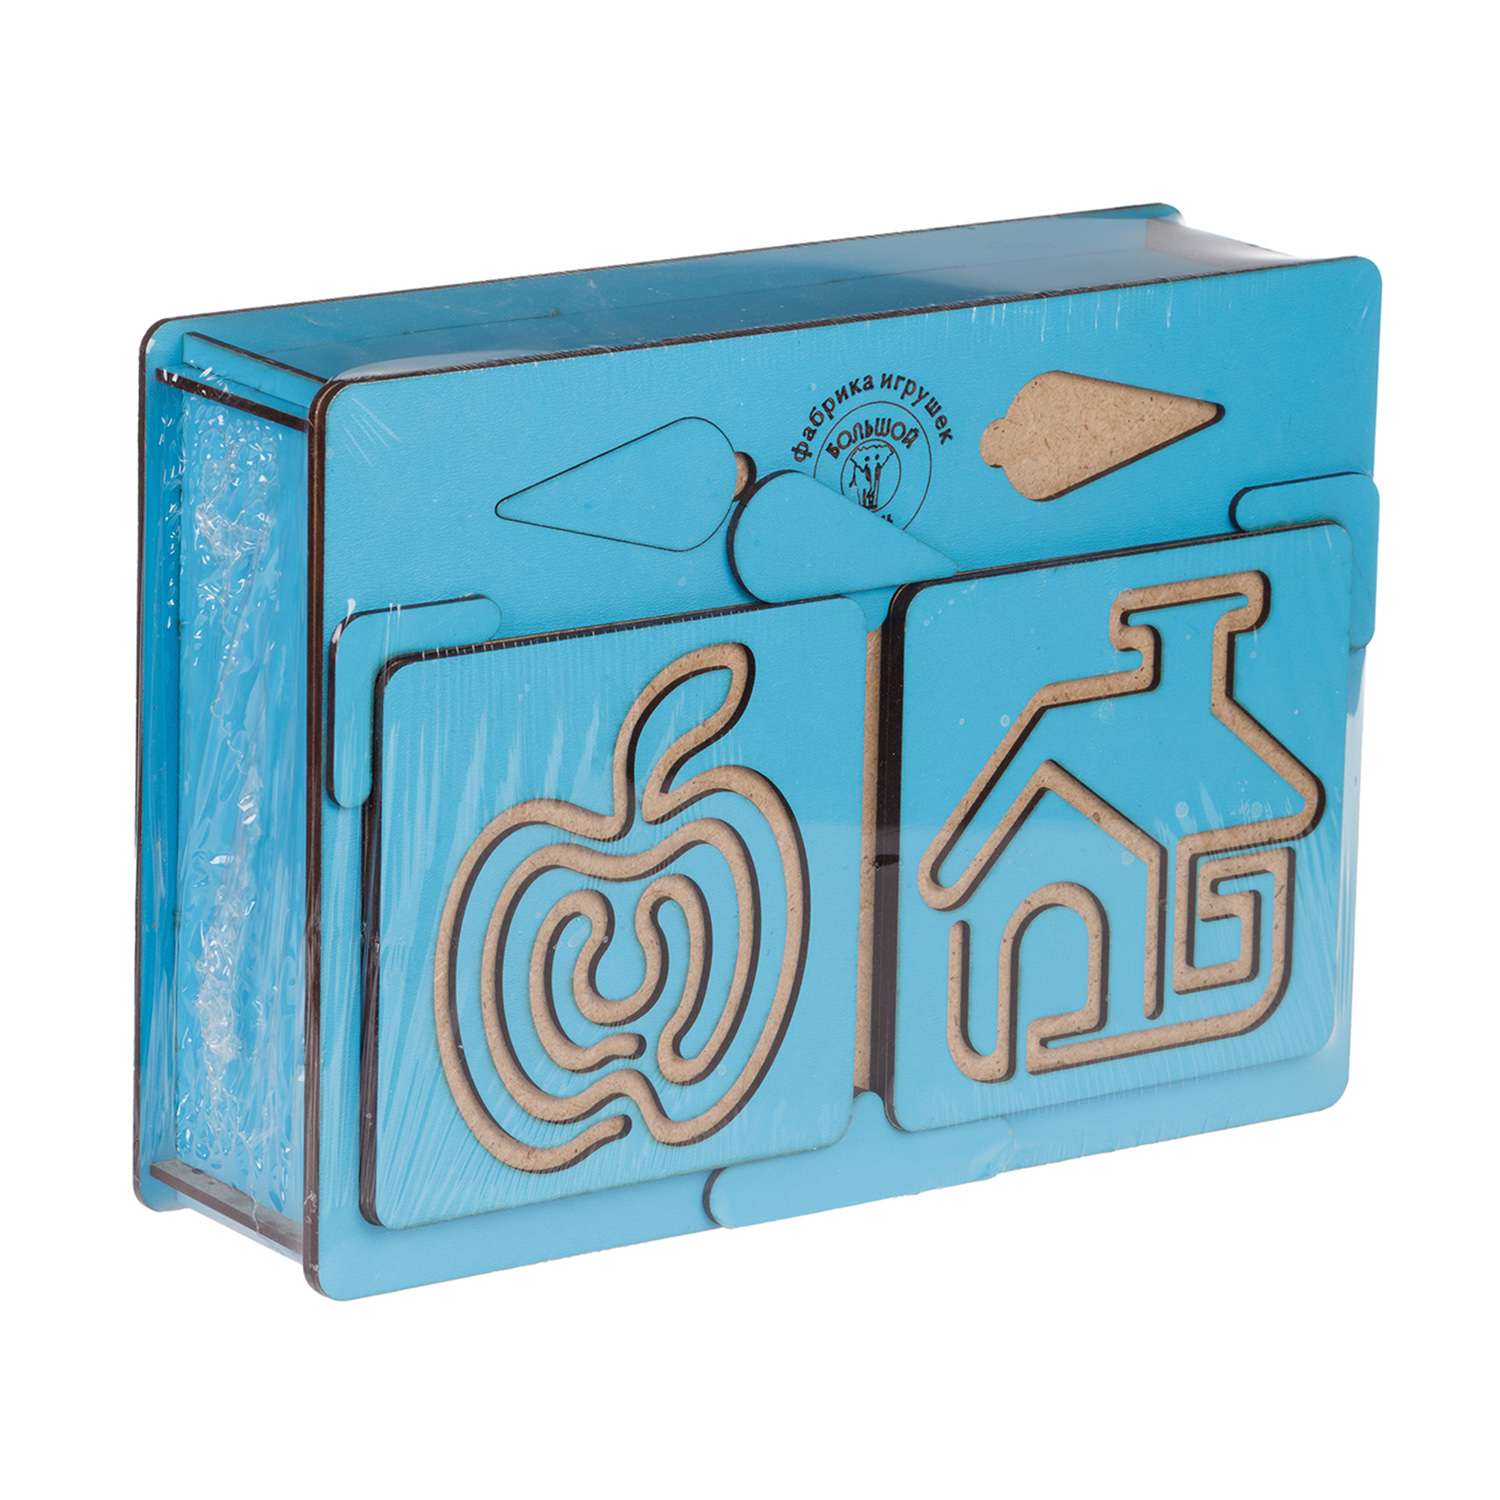 Развивающая игра Большой Слон доски межполушарные в коробочке синий - фото 2